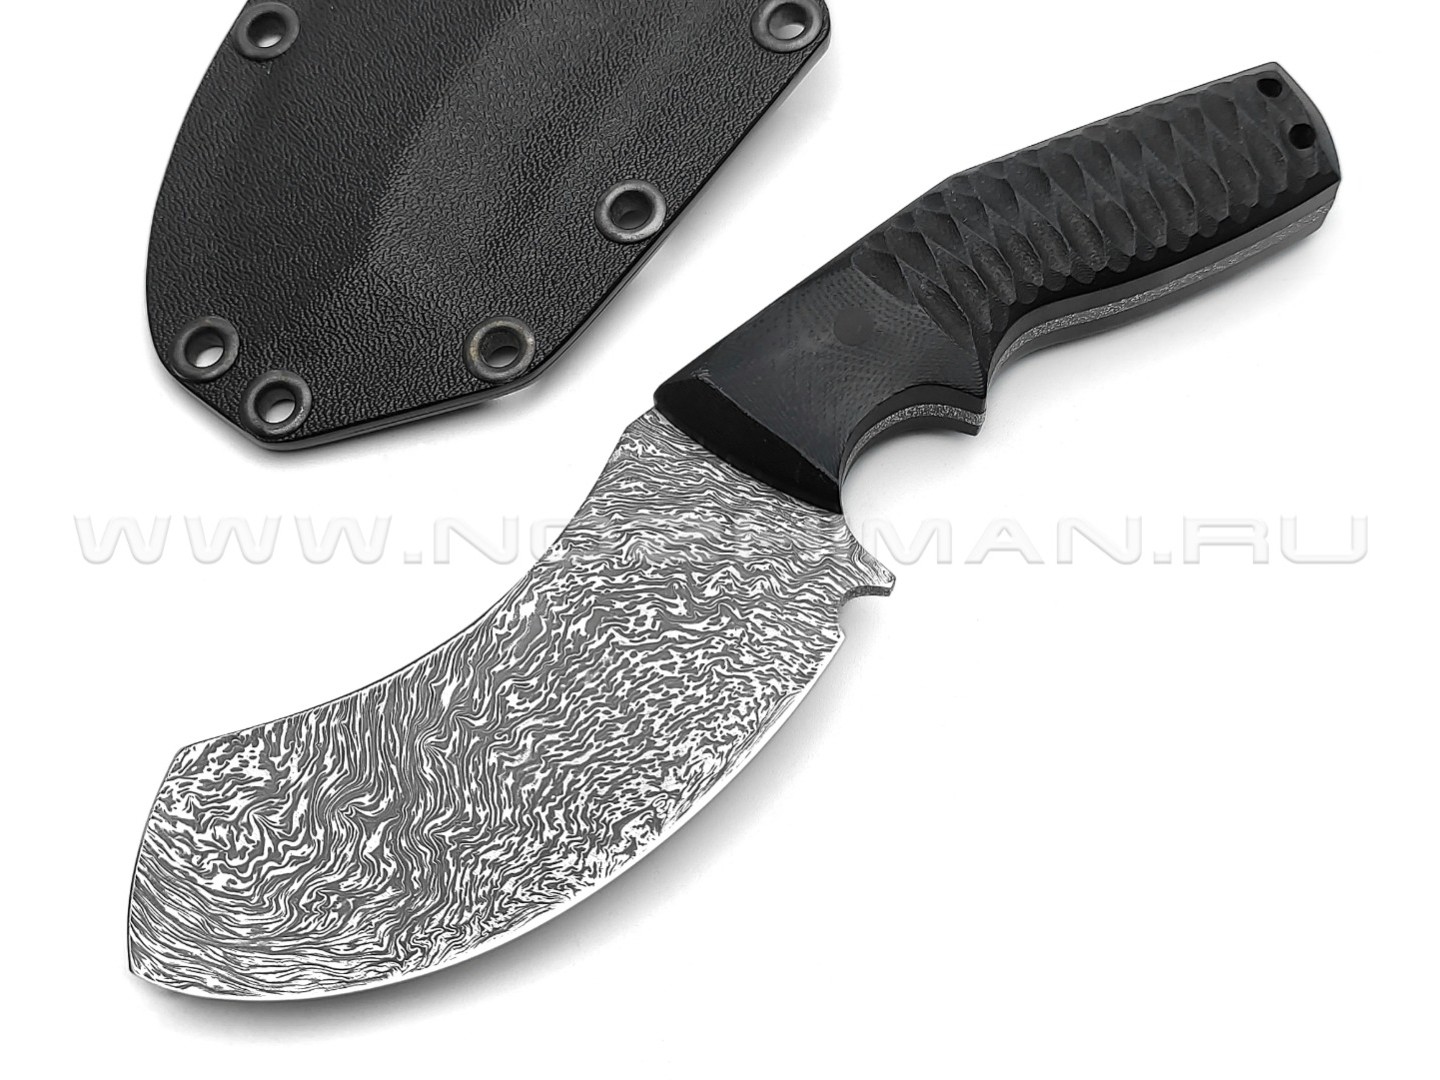 Волчий Век нож Кондрат 9.5 Mod., сталь Niolox WA, рукоять G10 black